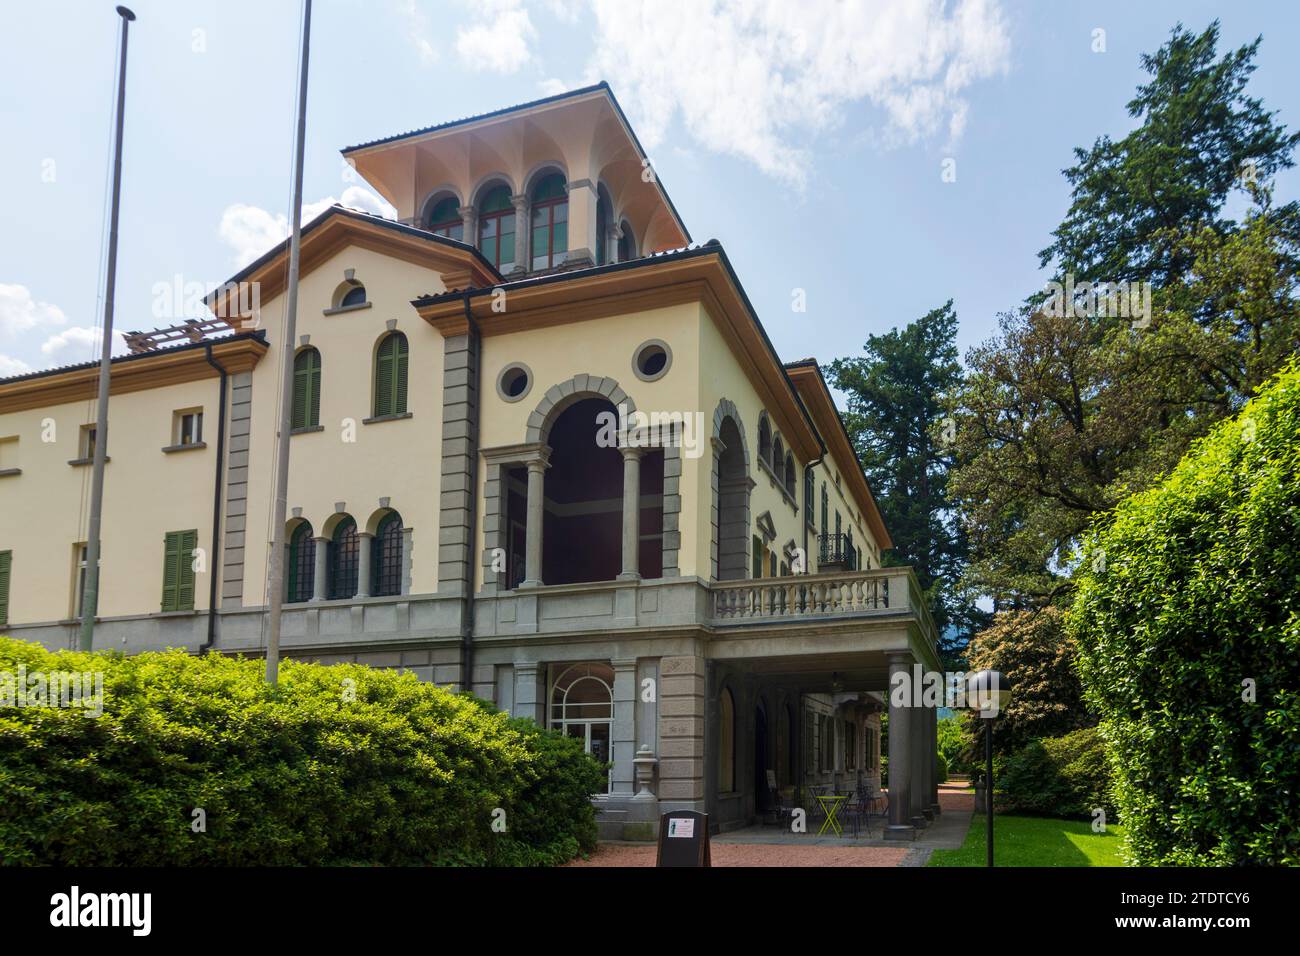 Bellinzona: museum Museo Villa dei Cedri in Bellinzona, Ticino, Tessin, Switzerland Stock Photo